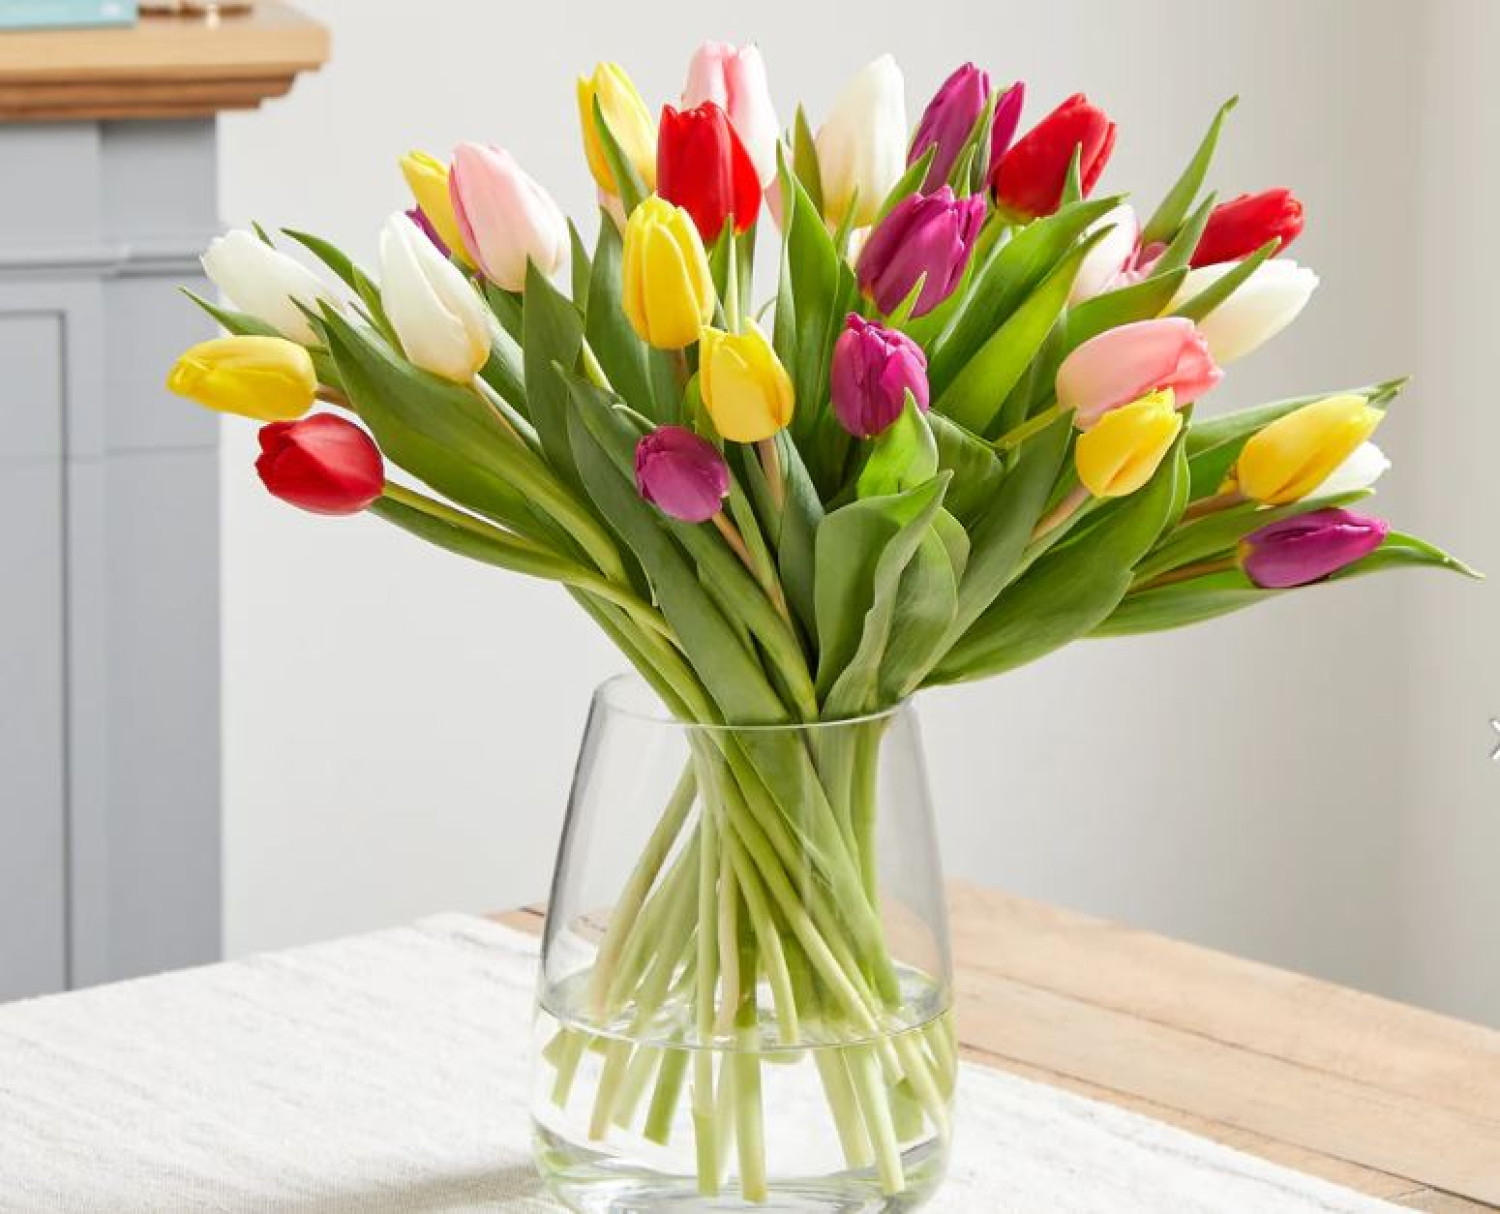 Így napokig szép marad a vázában a tulipán